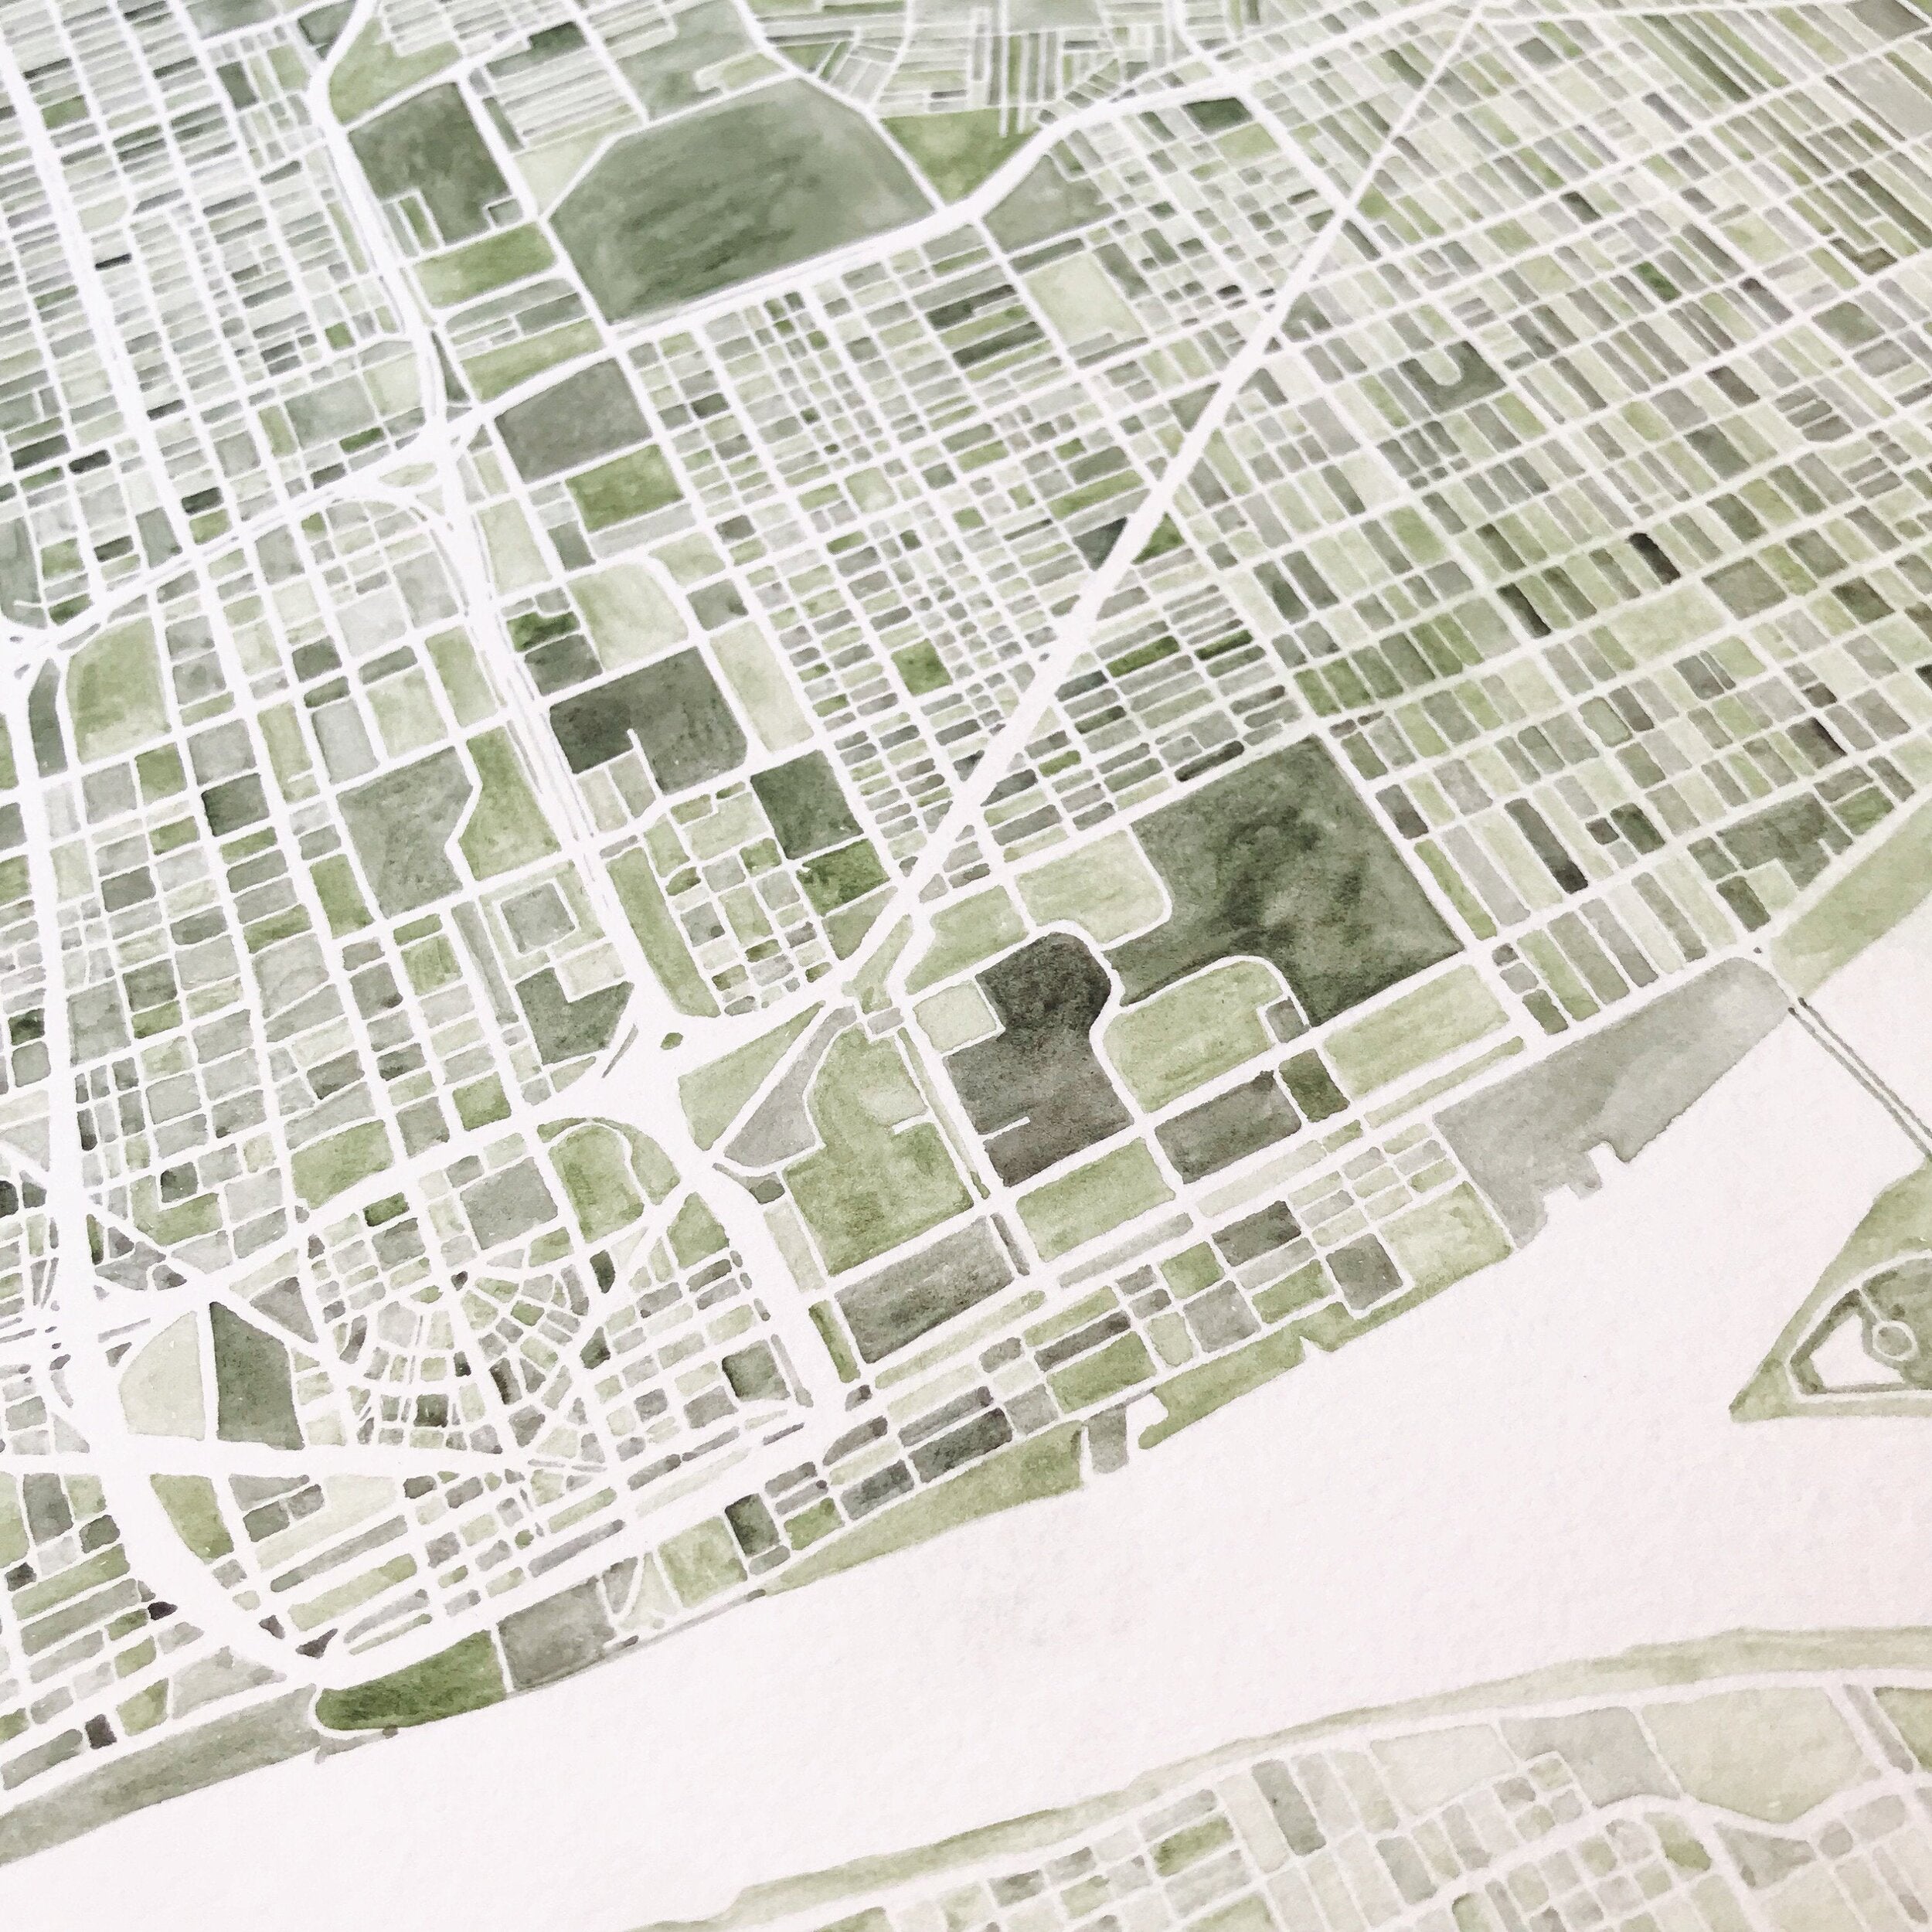 DETROIT Watercolor City Blocks Map: ORIGINAL PAINTING (Commission)